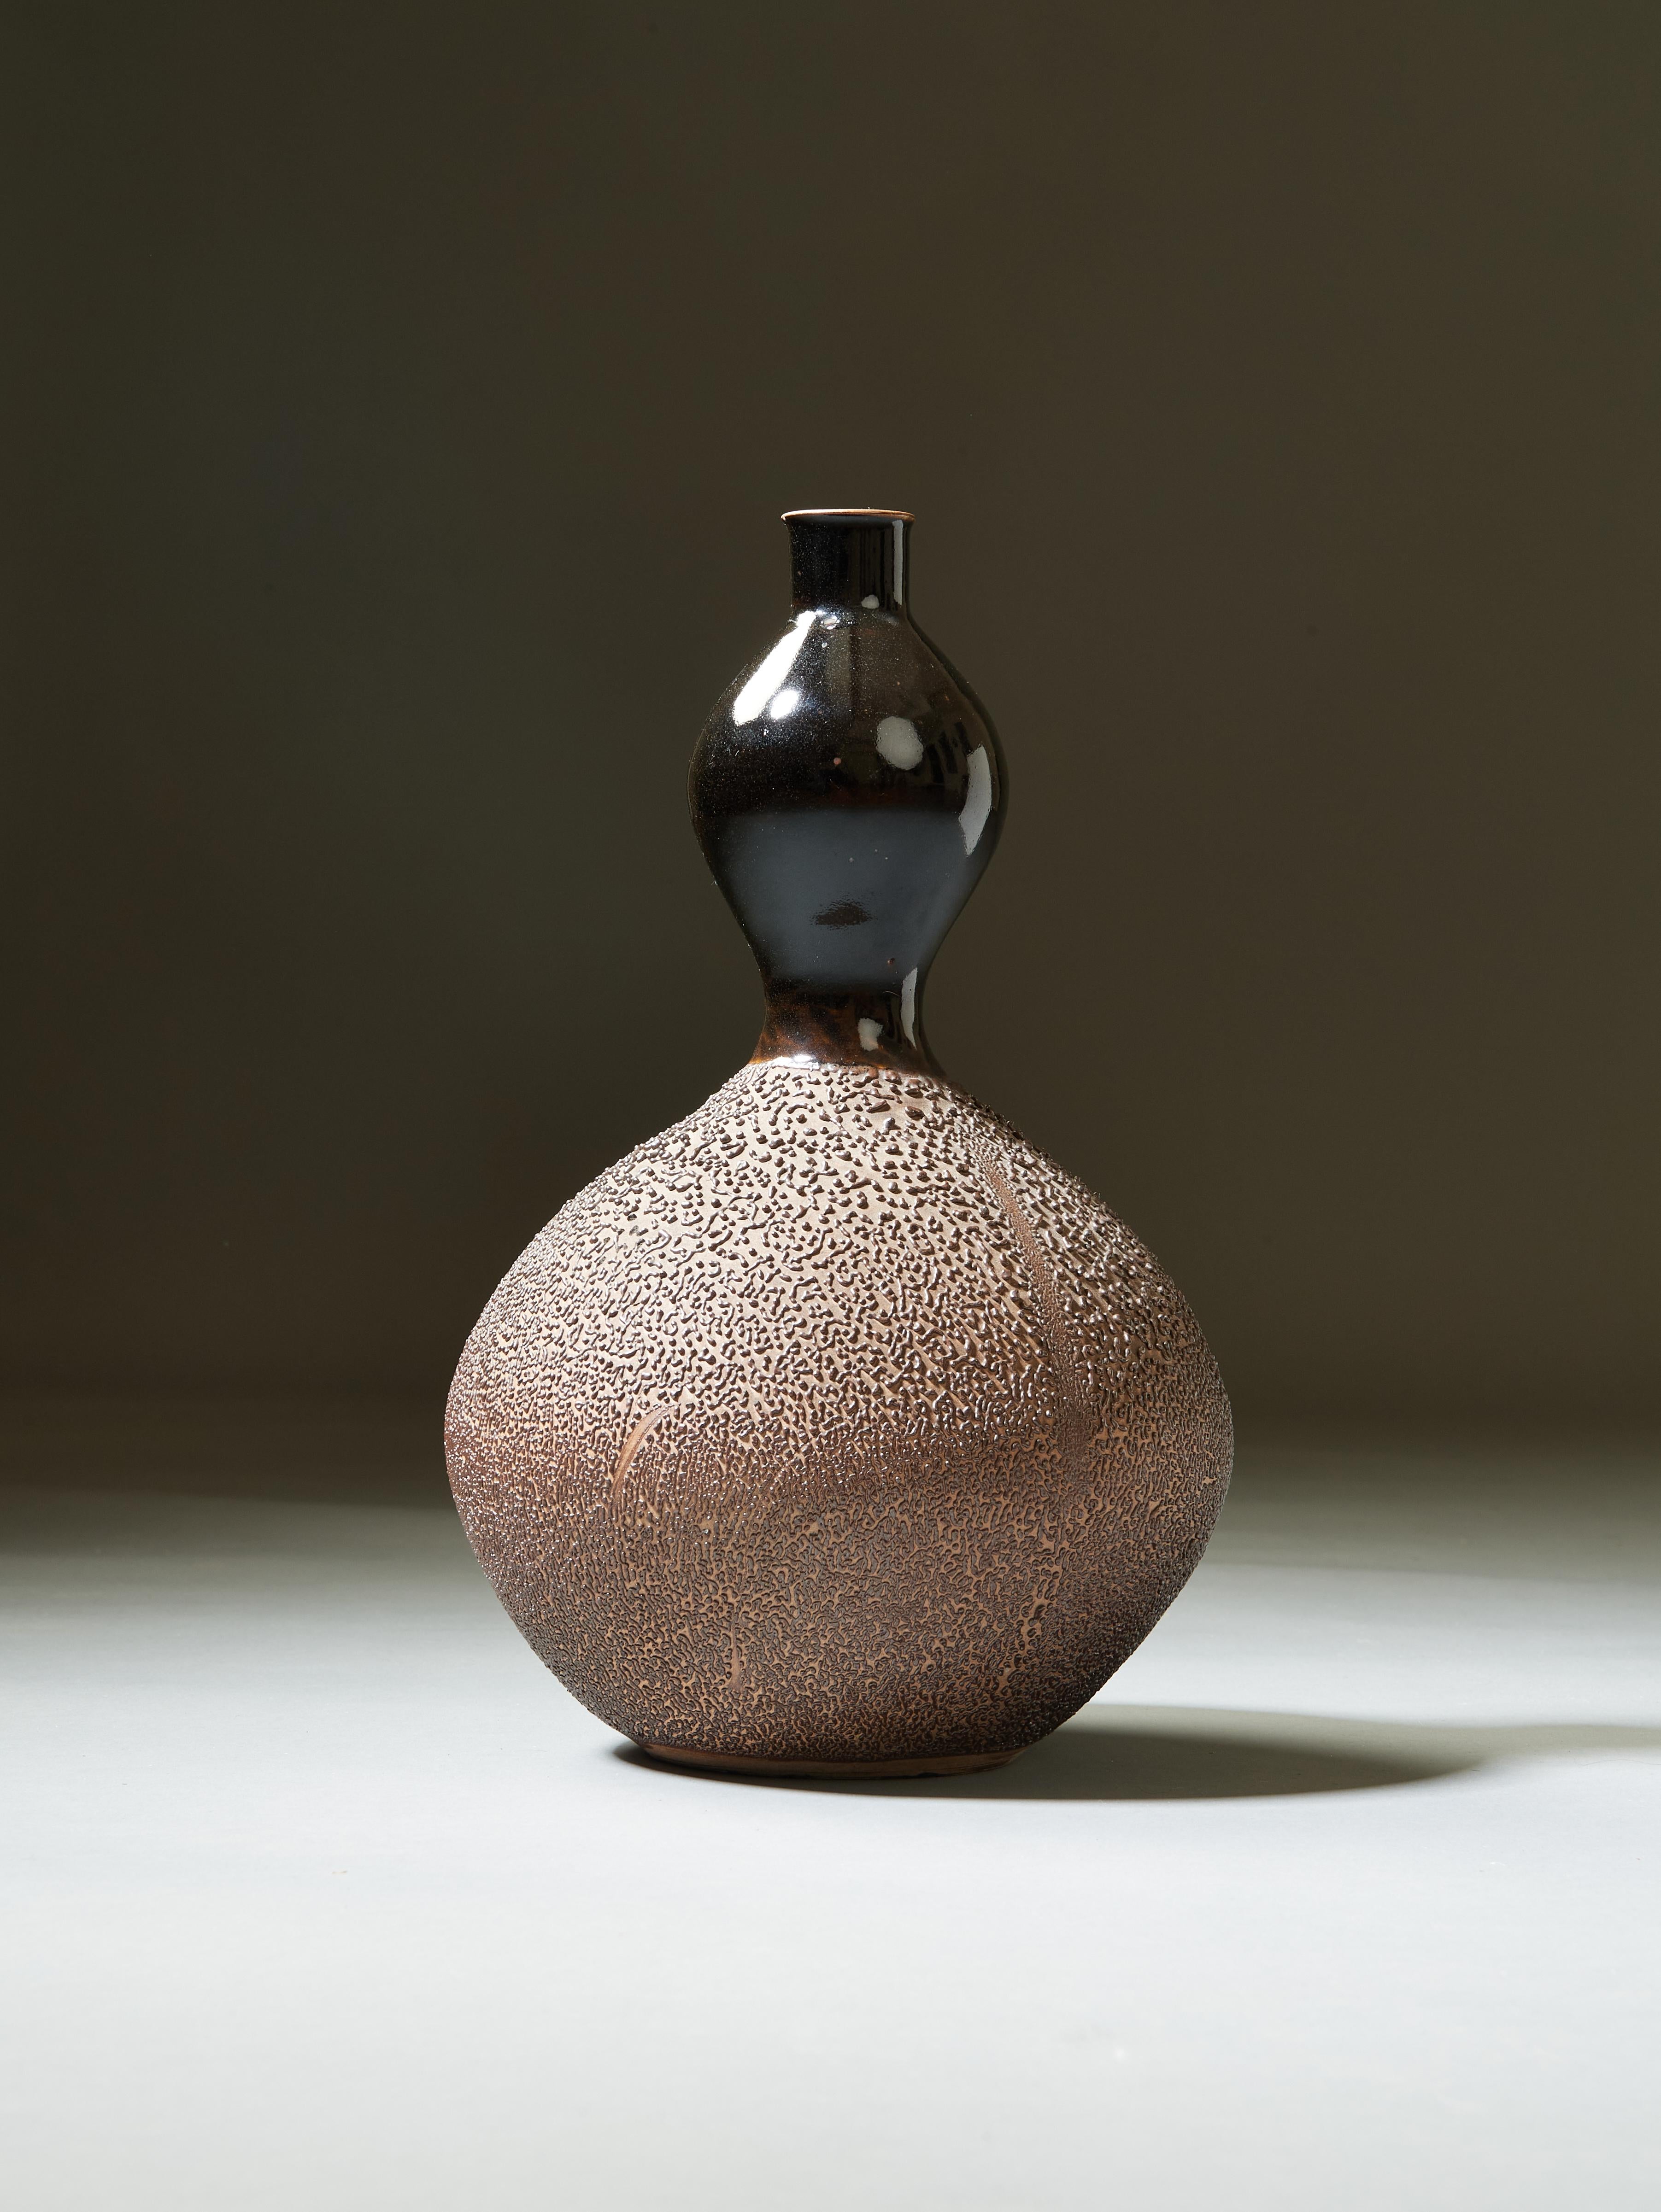 Japan, XX. Jahrhundert

Eine gewundene japanische Doppelkürbis-Vase aus schwarz glasiertem und strukturiertem erdfarbenem Steinzeug. Eine komprimierte kugelförmige untere Birne, deren matte, schön fühlbare Oberfläche wie Melonenschale gesprenkelt